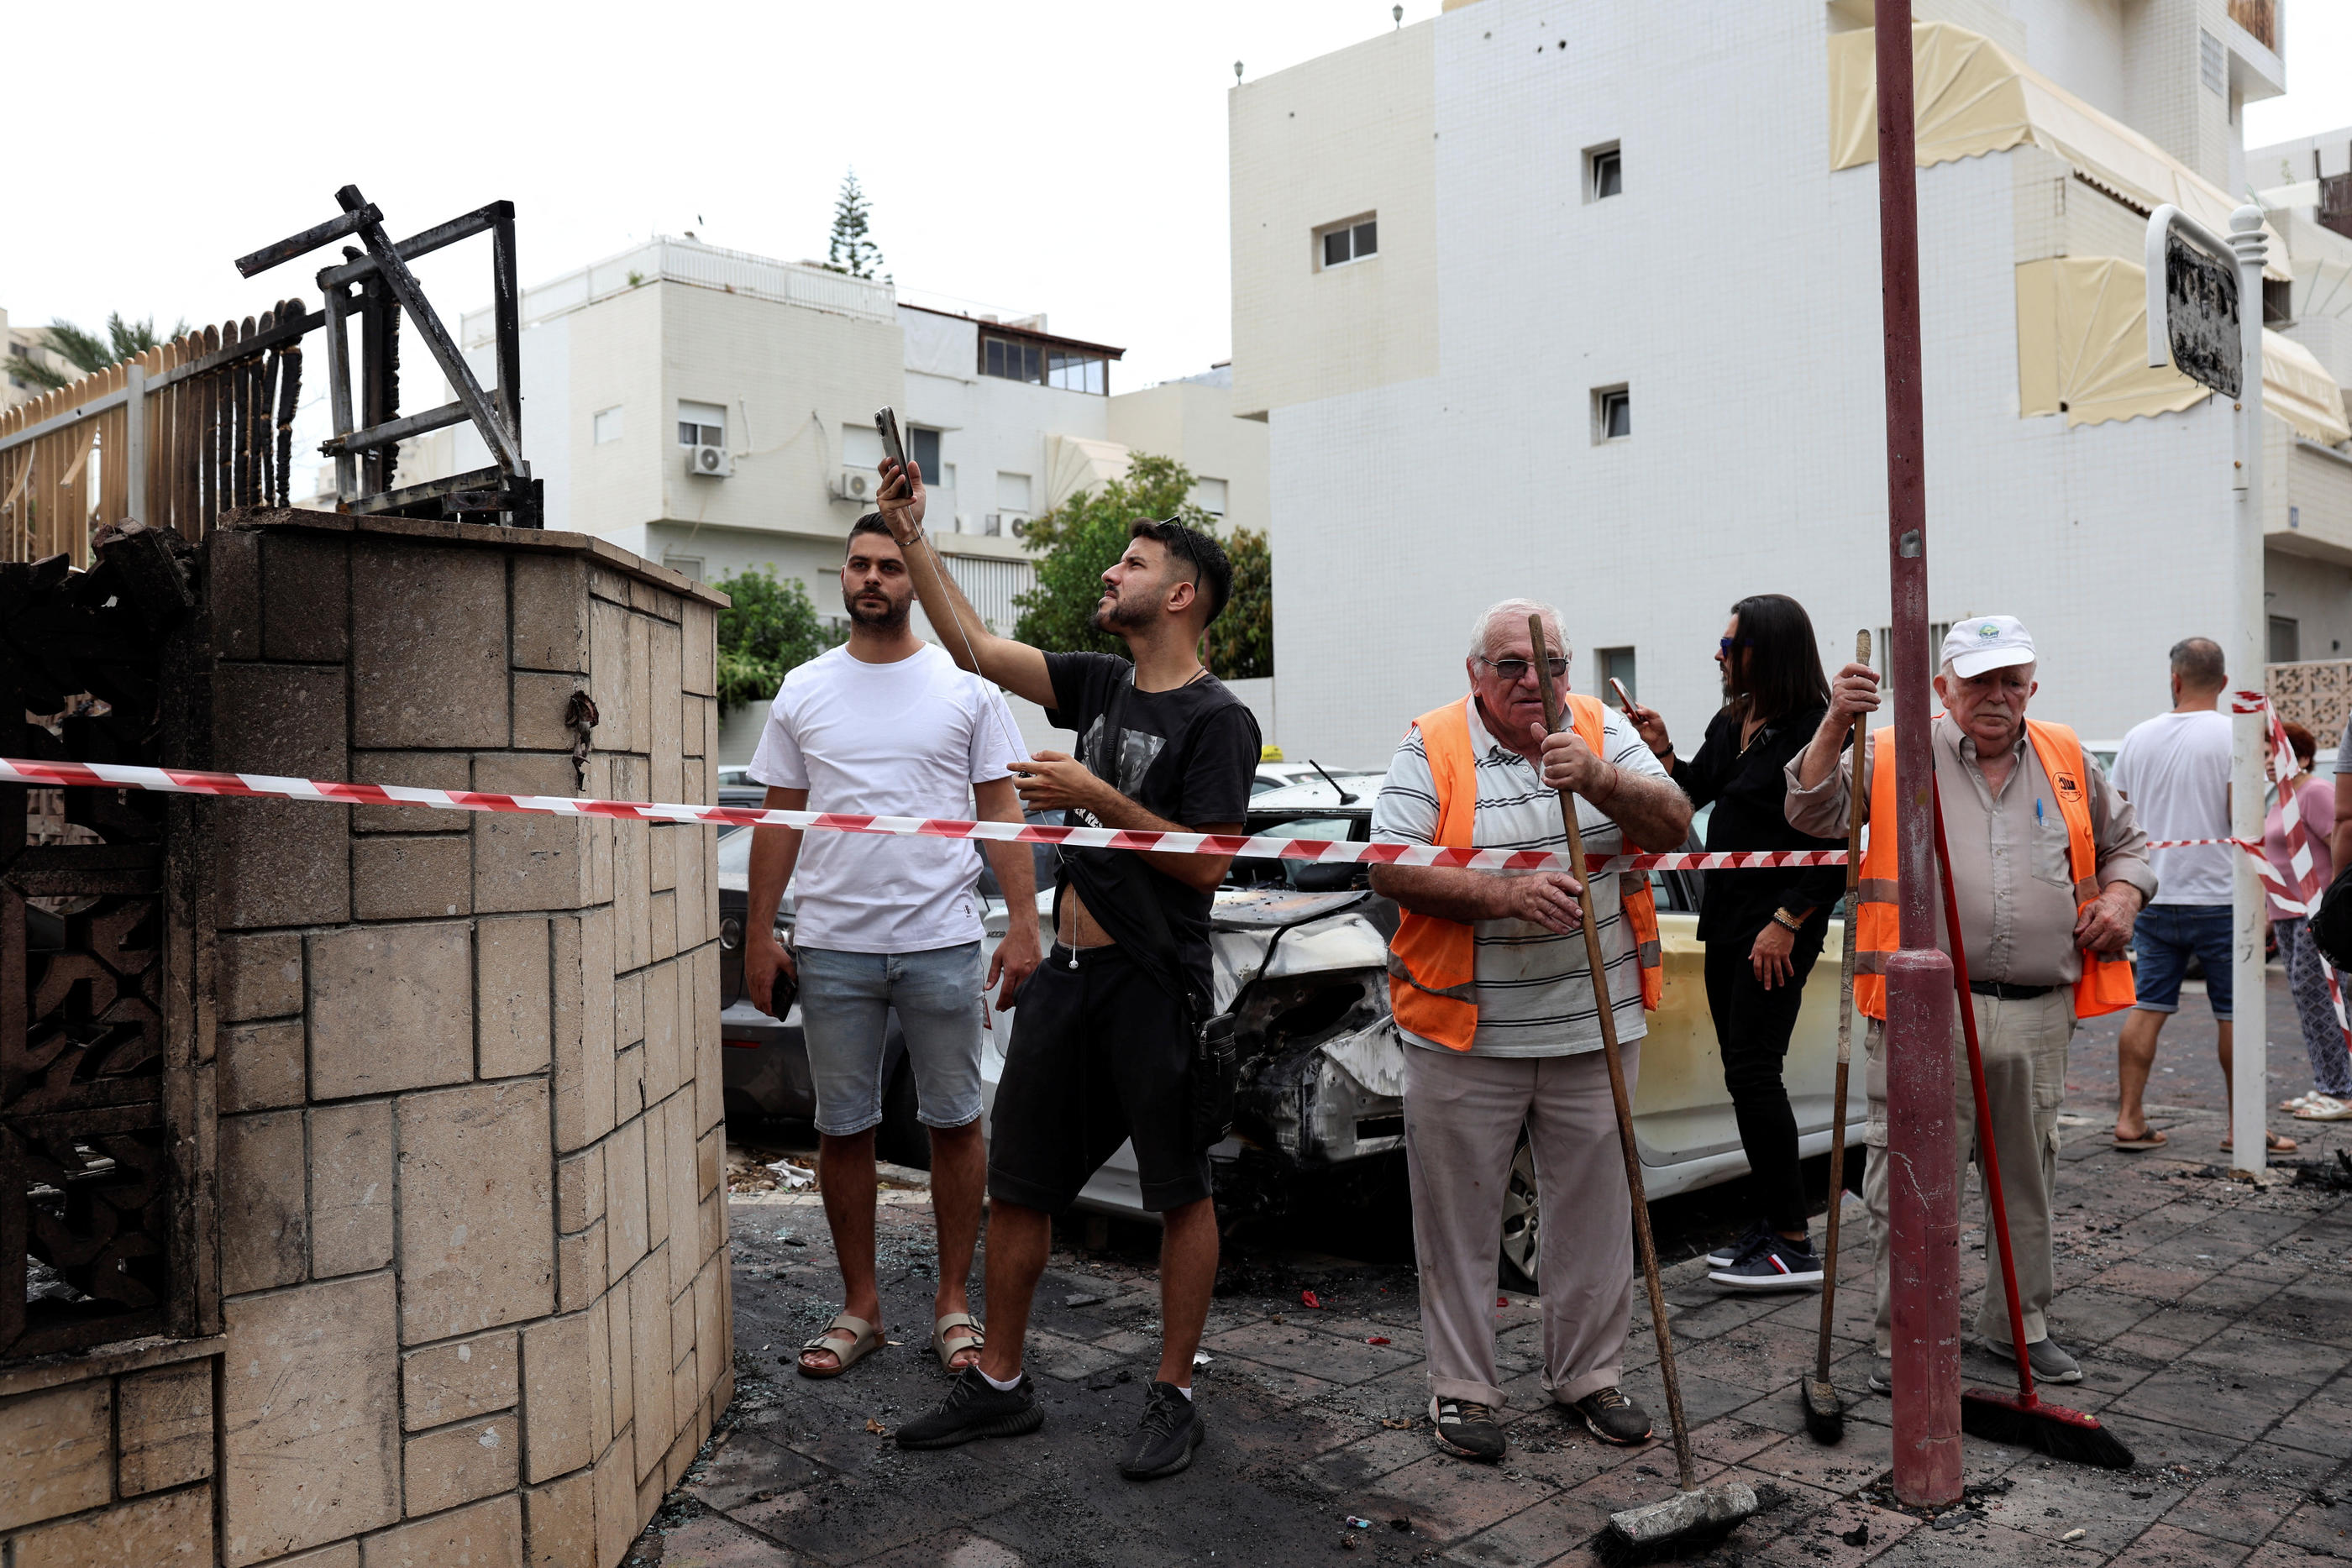 Ashdod, situé à une trentaine de kilomètres de l’enclave palestinienne de Gaza, a été frappé par des roquettes palestiniennes samedi et vit désormais dans un climat de terreur. Reuters/Violeta Santos Moura